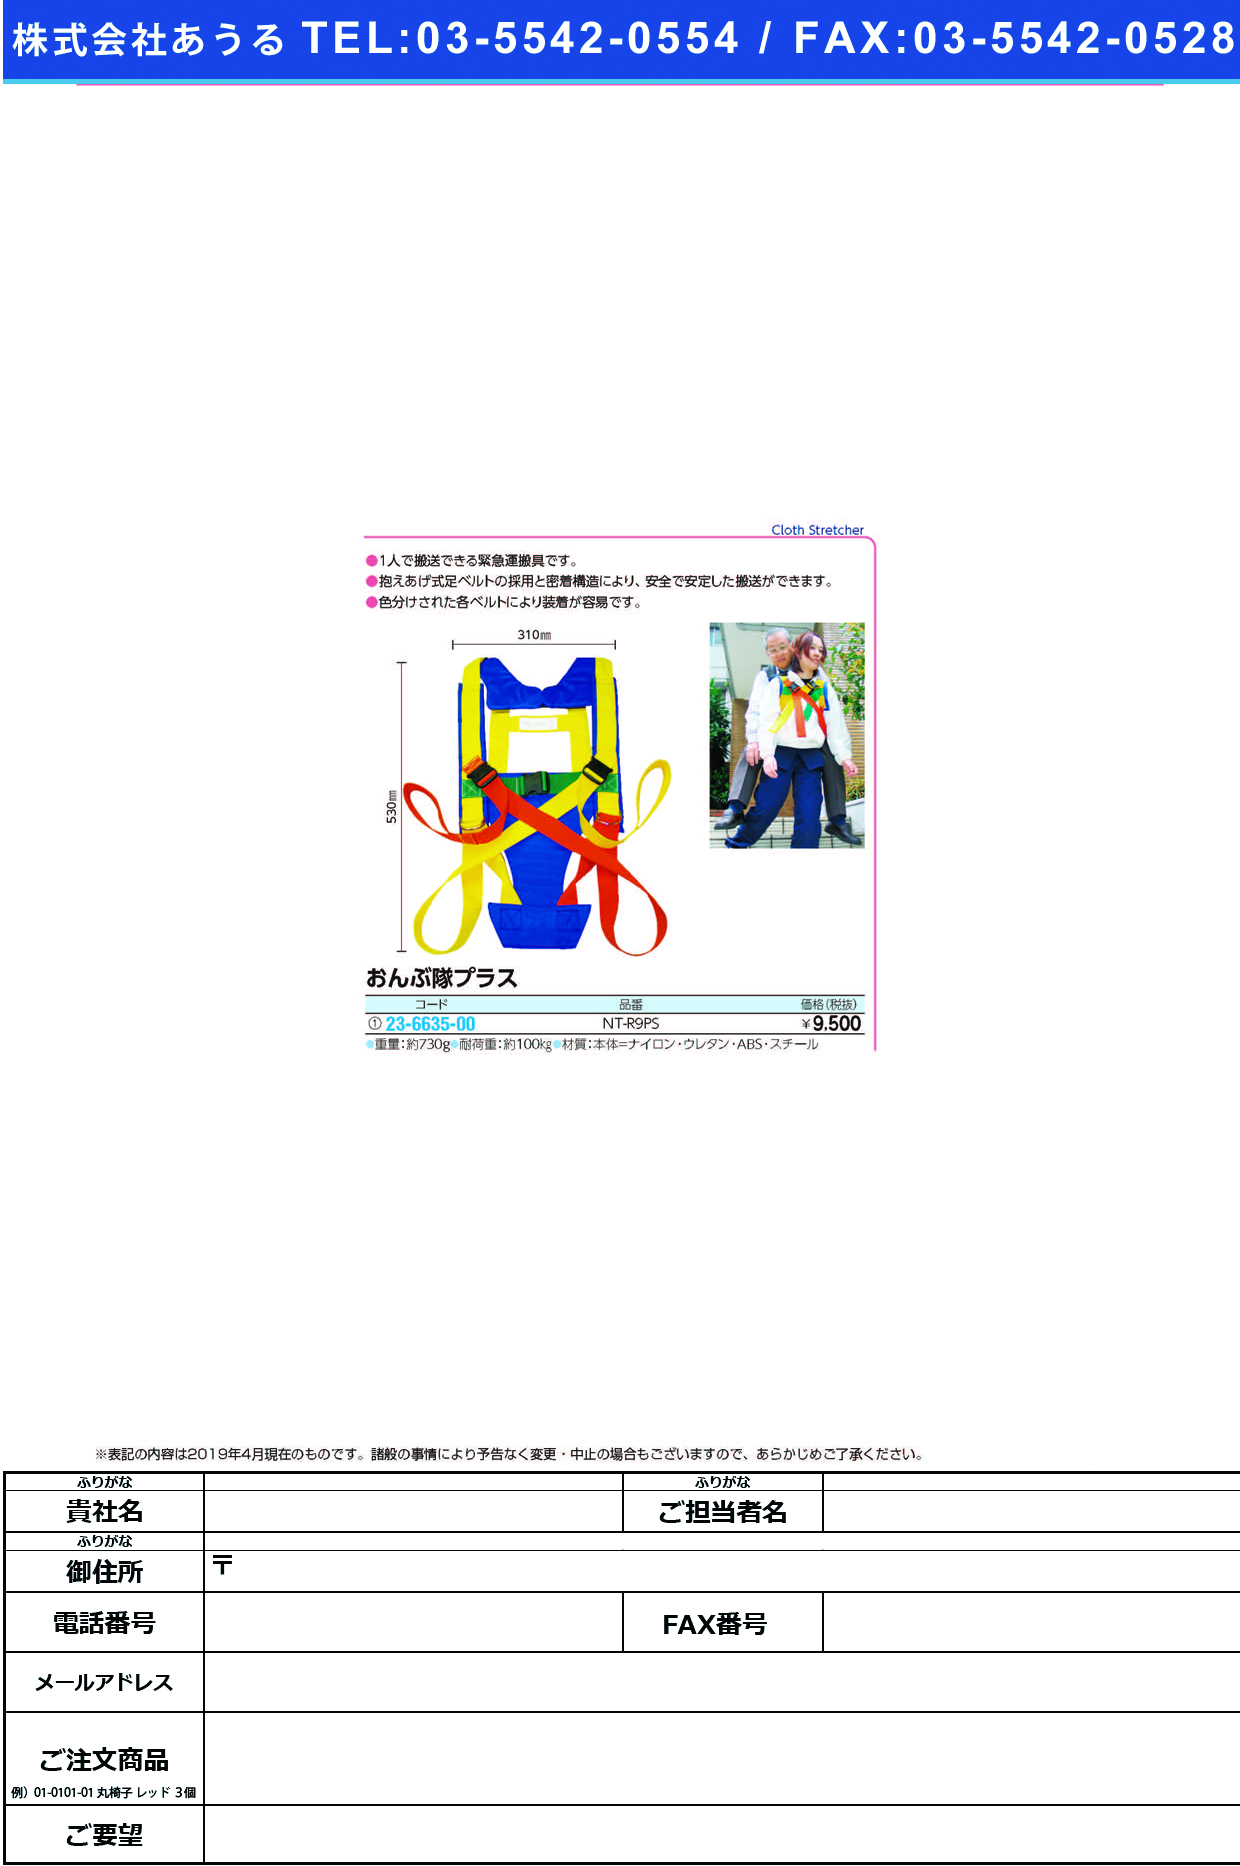 (23-6635-00)おんぶ隊プラス NT-R9PS ｵﾝﾌﾞﾀｲﾌﾟﾗｽ【1個単位】【2019年カタログ商品】